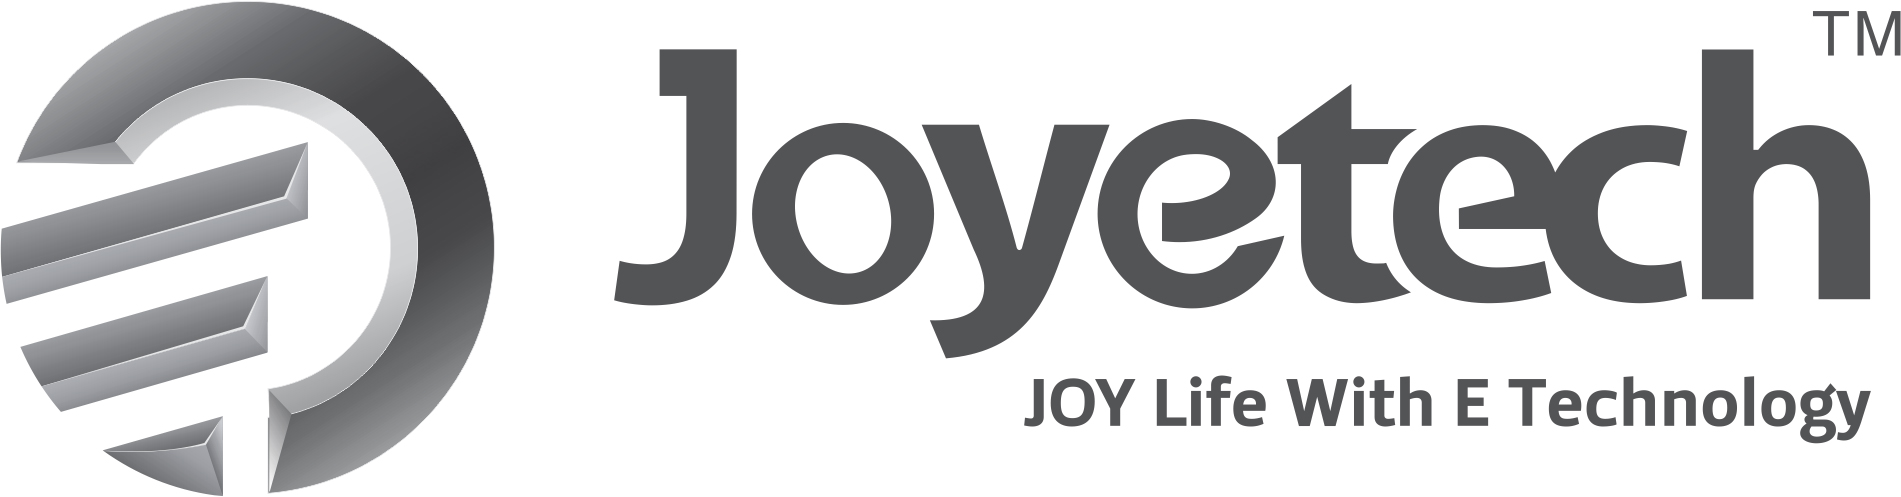 logo joyetech